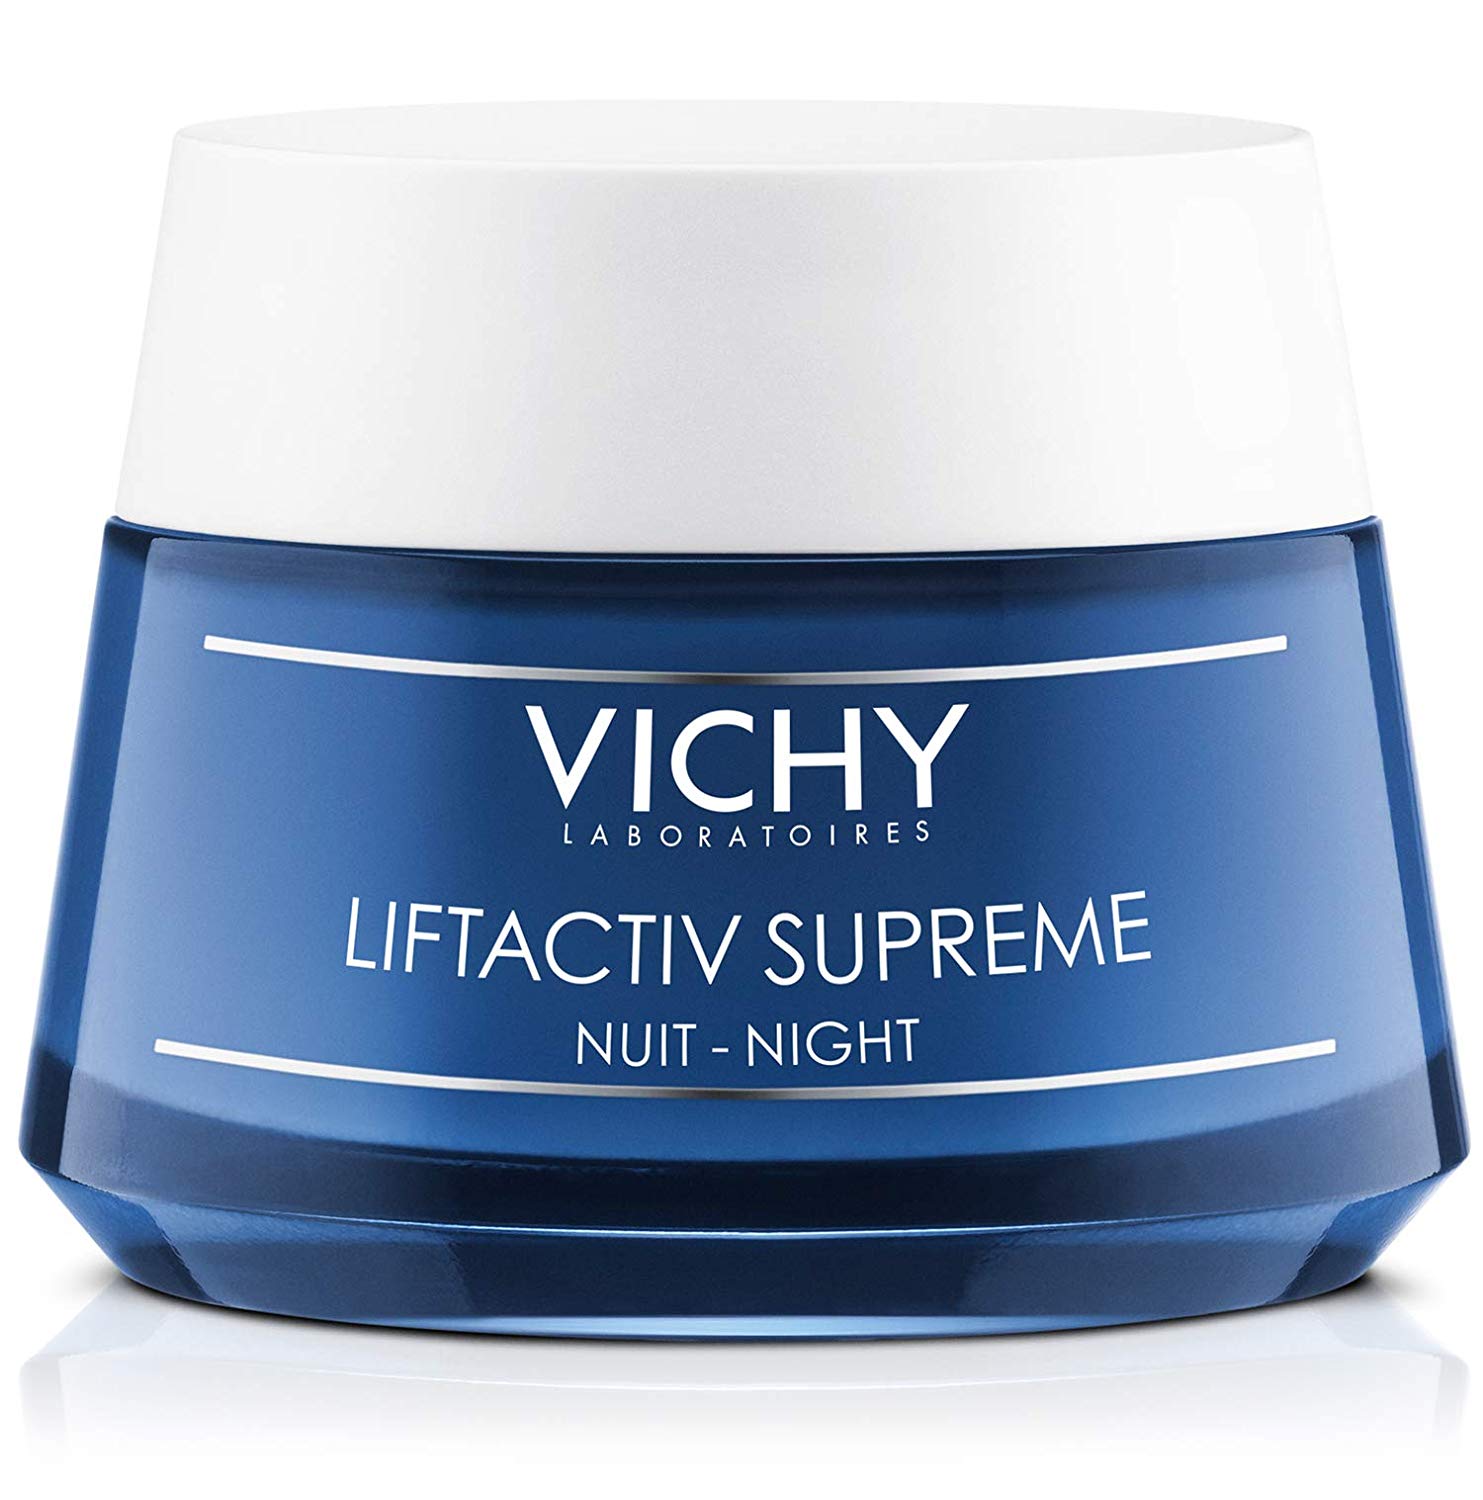 vICHY liftactiv supreme el 1er efecto lifting continuo de Vichy que dura hasta la noche para una corrección anti-arrugas y firmeza.